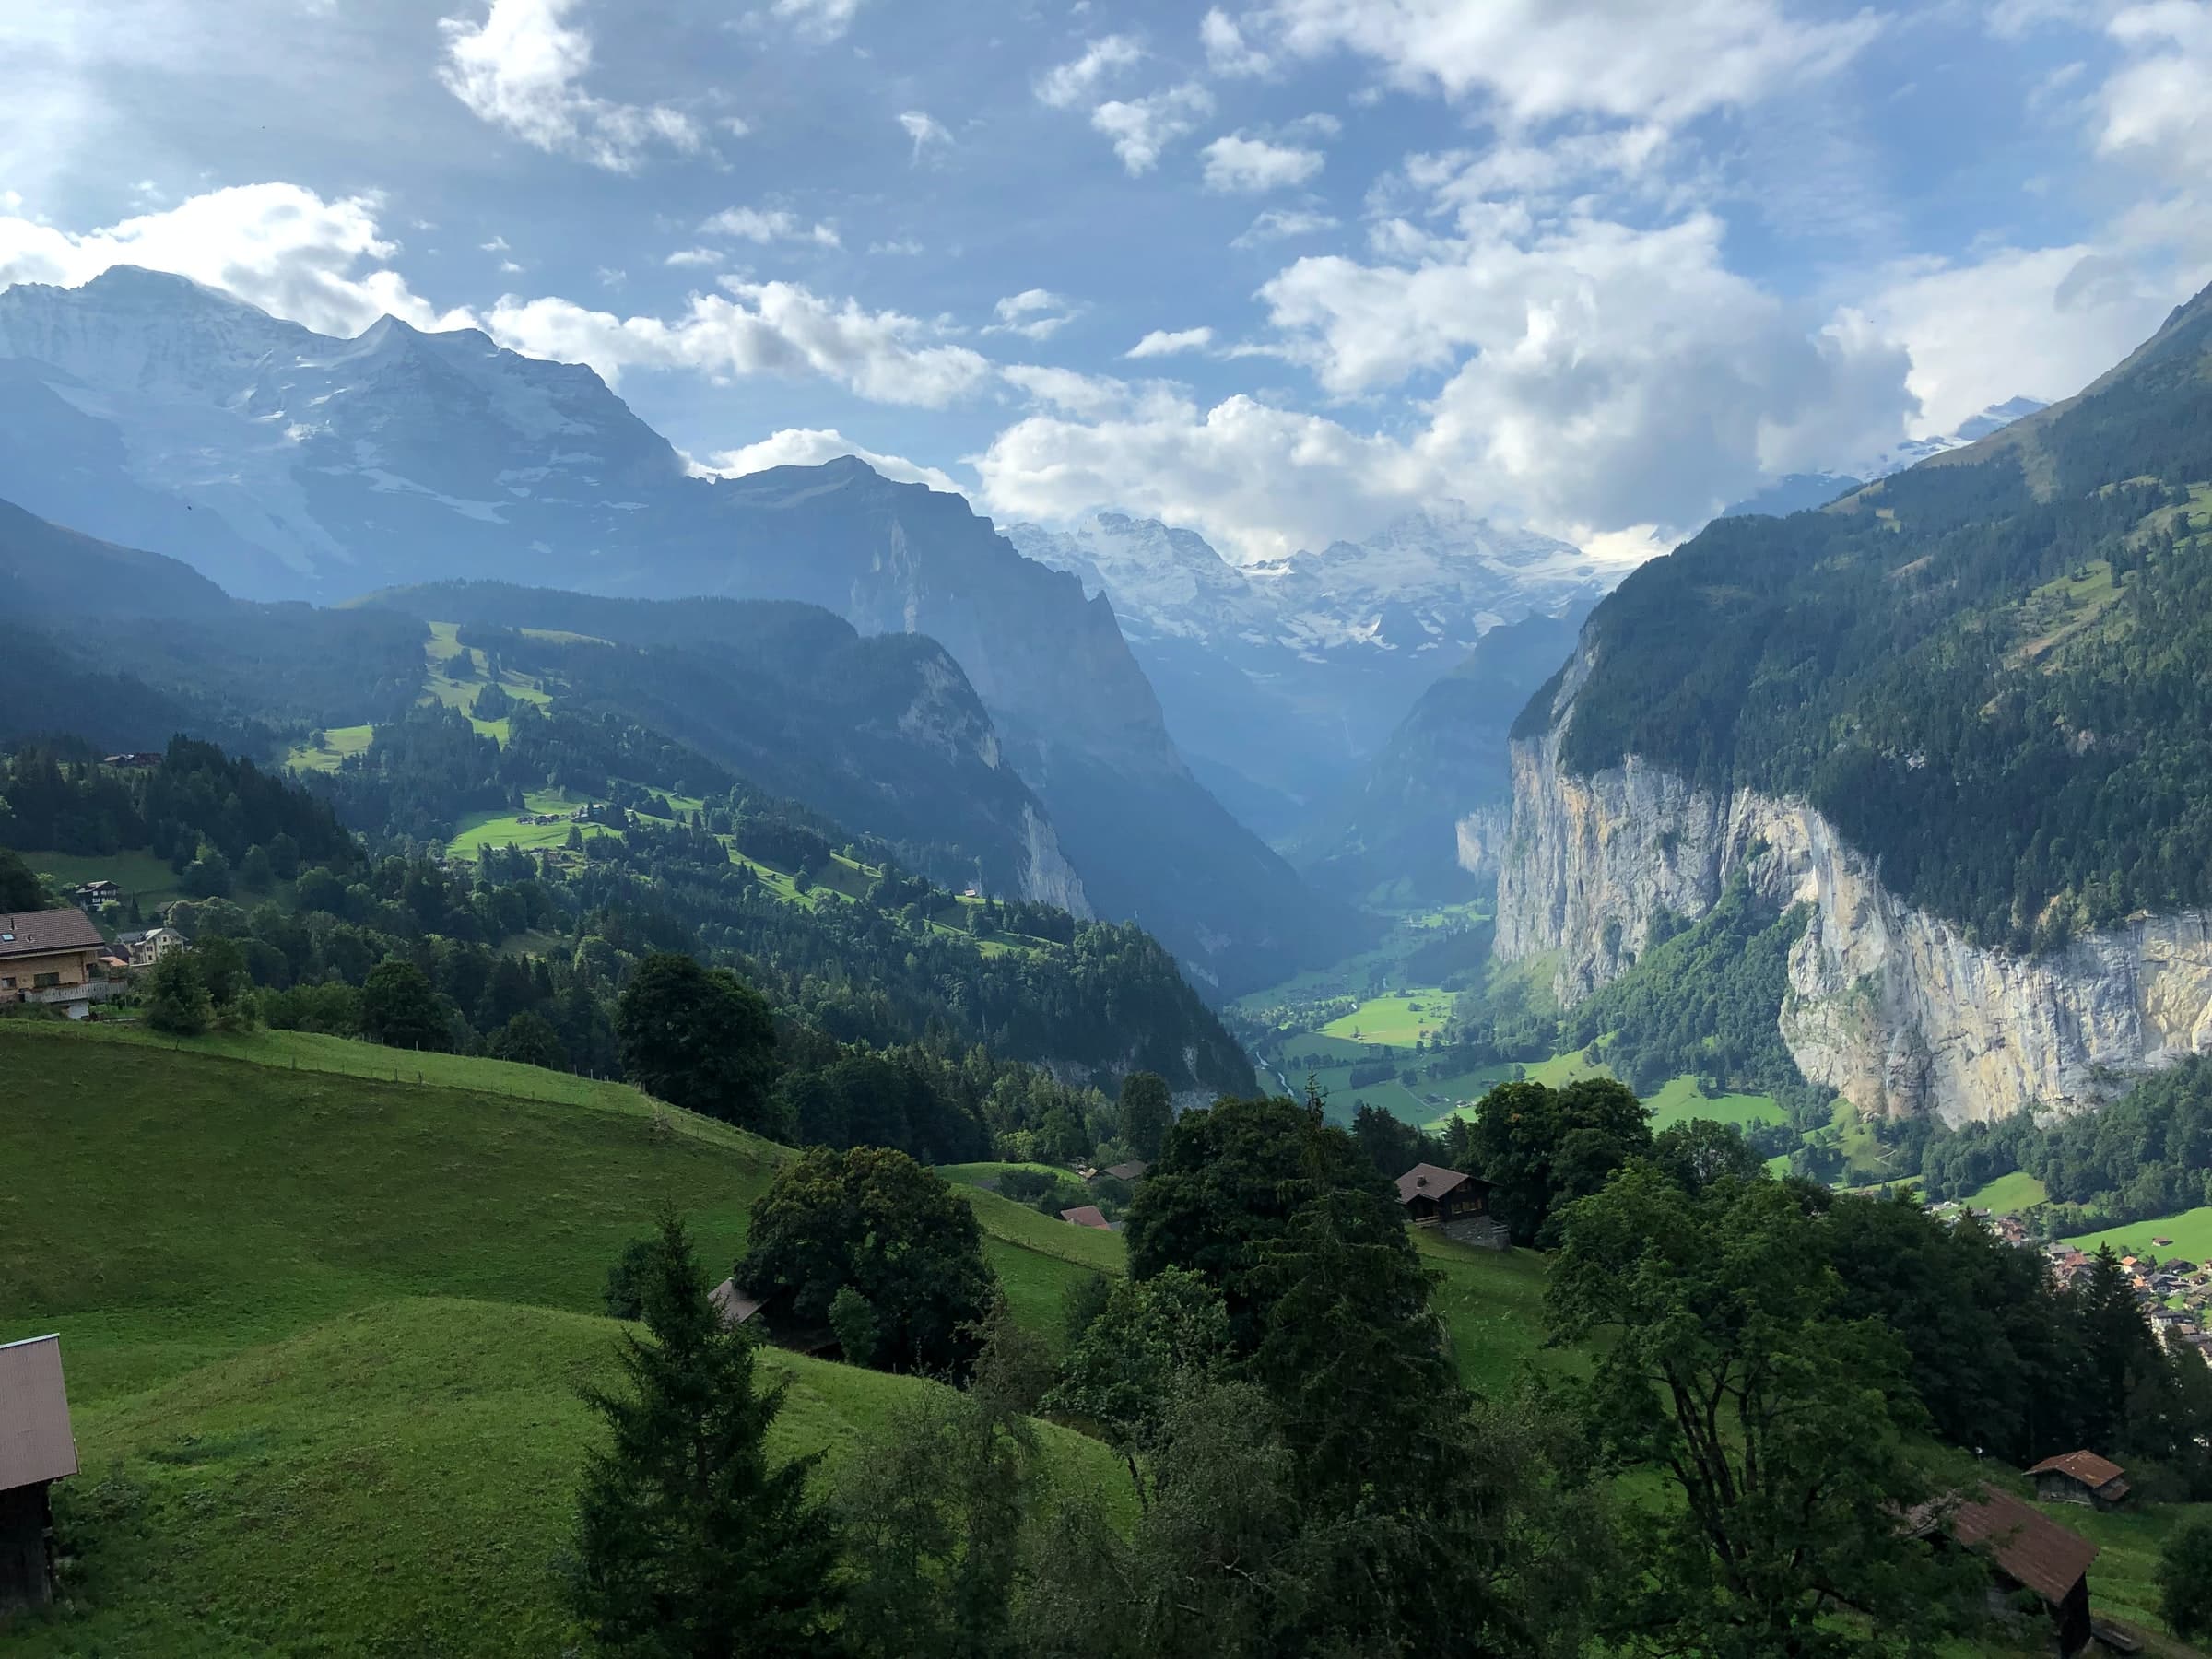 El valle en el que se encuentra Lauterbrunnen desde un punto más alto a unos 5 kilómetros de distancia.